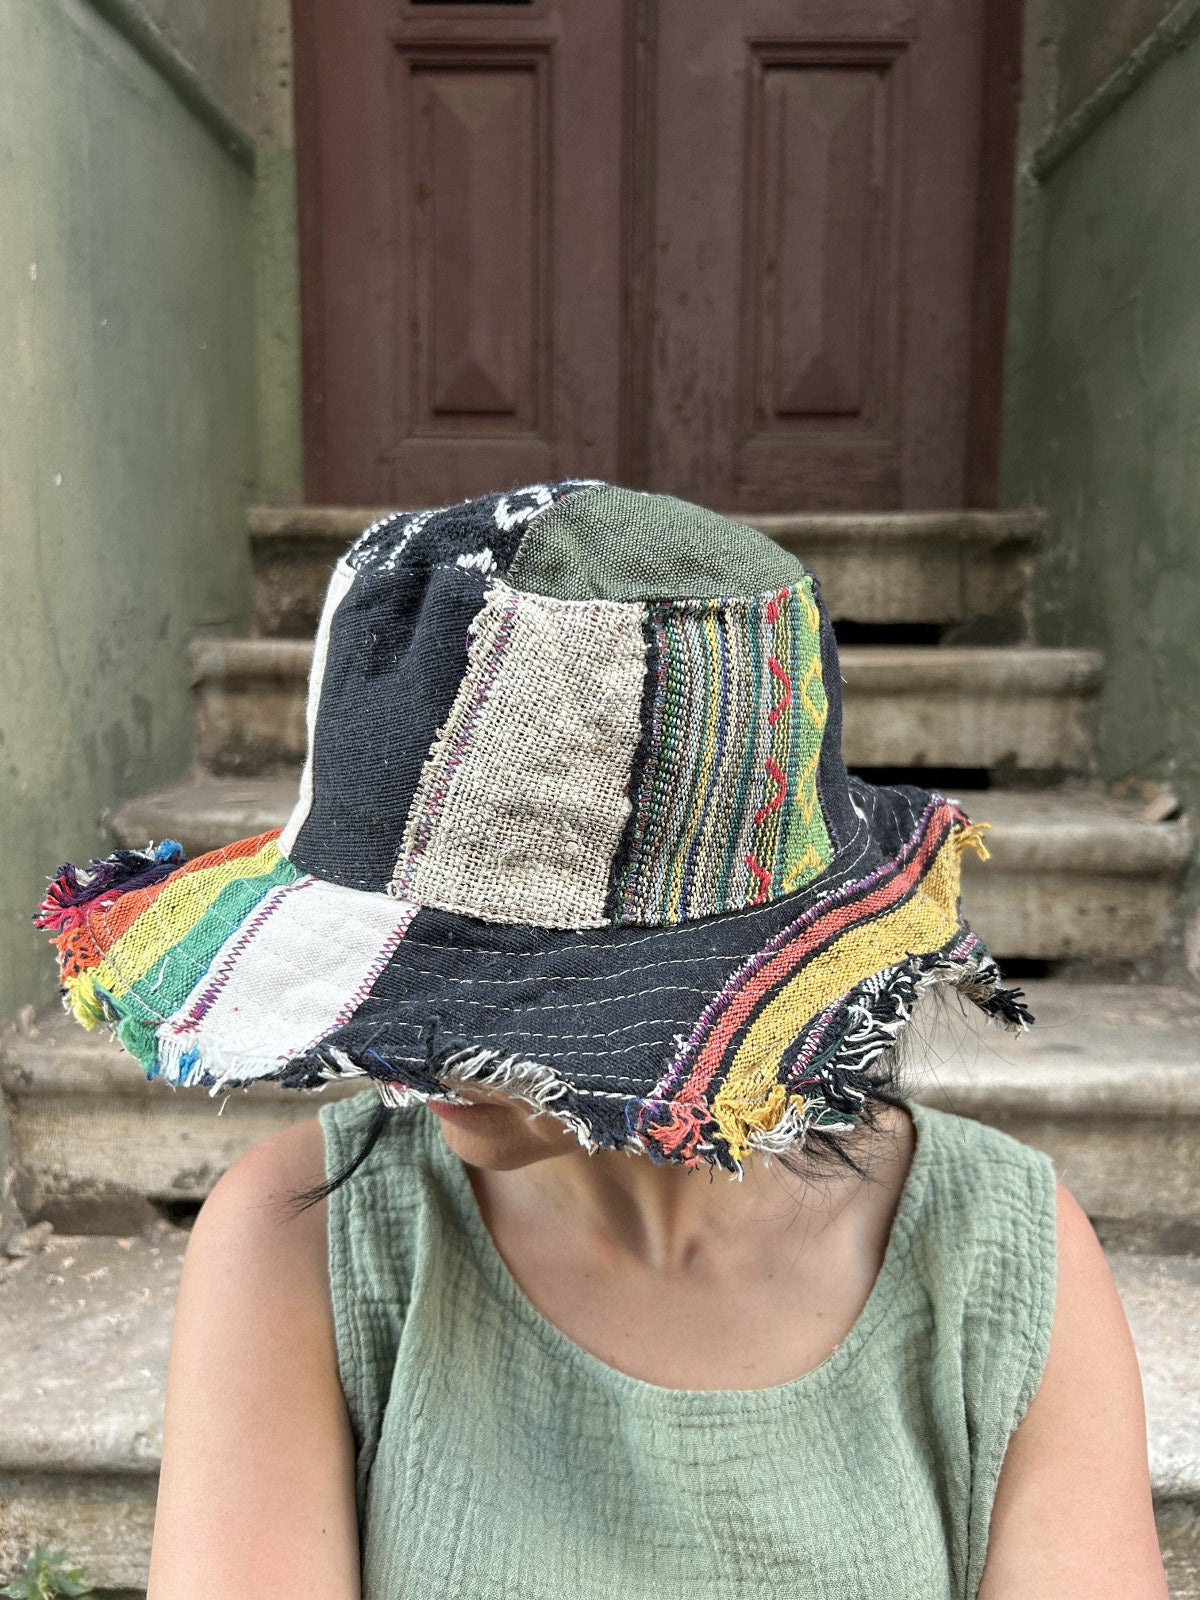 Unisex Nepal Pure Hemp siyah renkli patchwork şapka, %100 pamuk ve hemp kumaşlardan el yapımı, farklı renk ve desenlerle bohem tarzda.